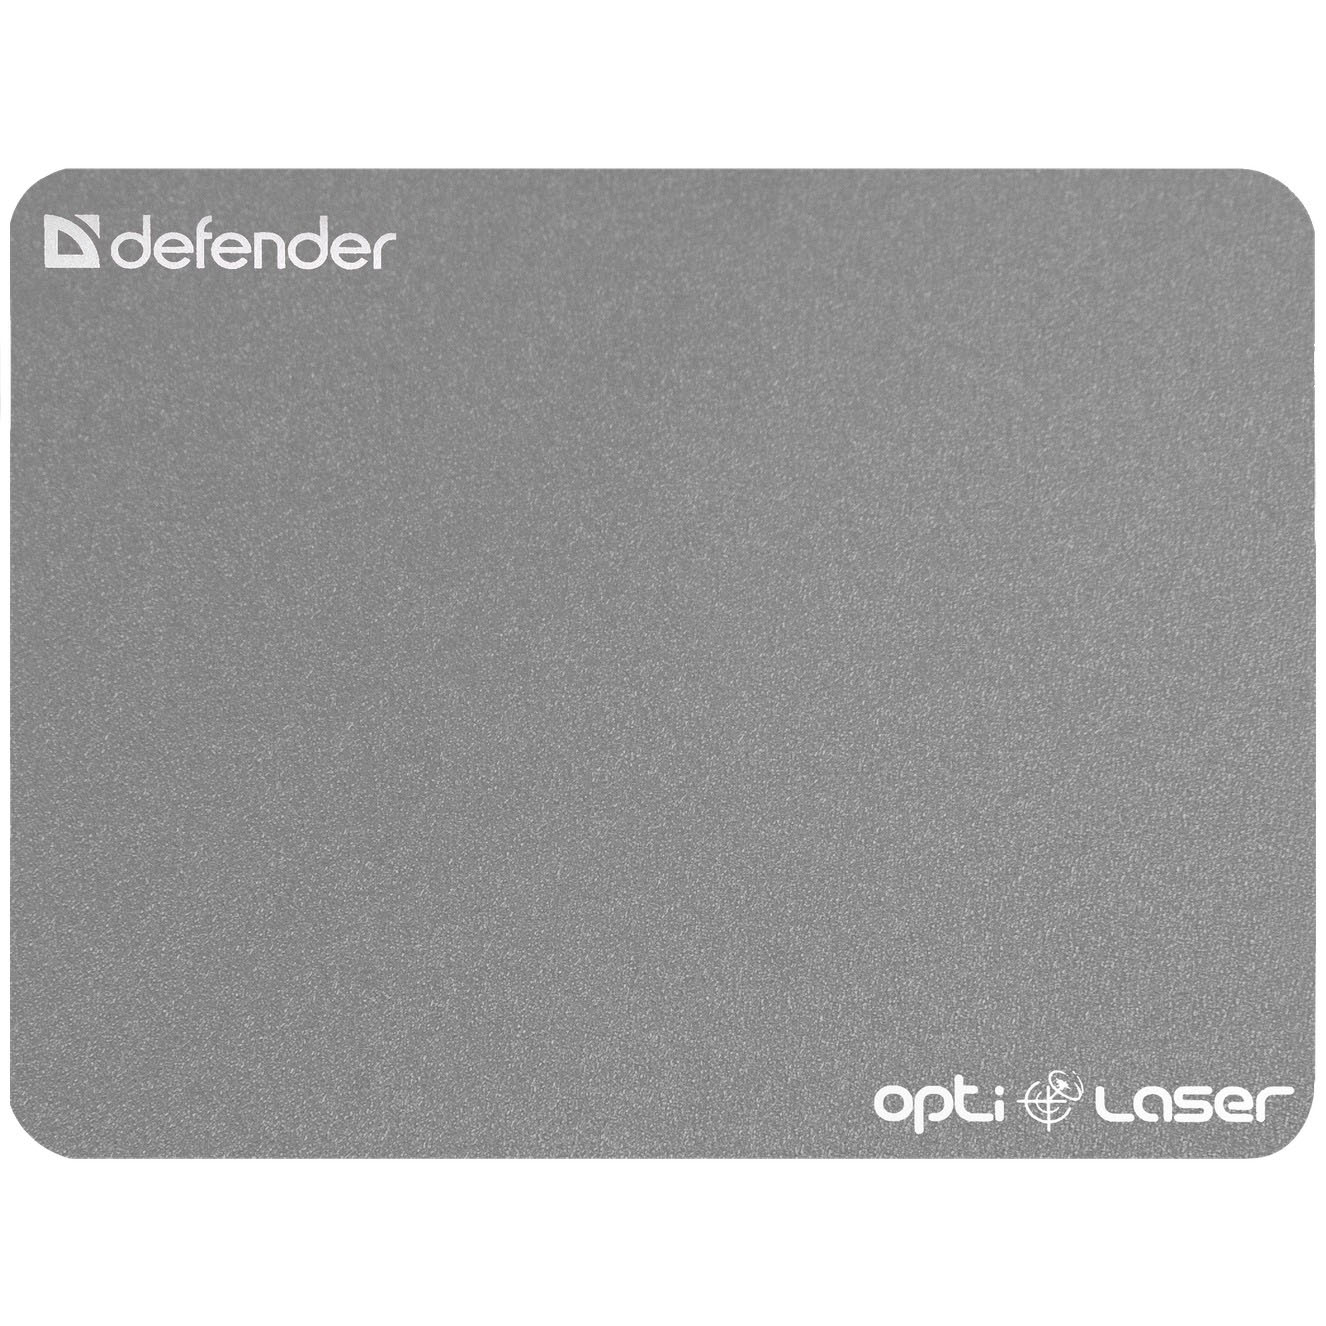 DEFENDER Silver opti-laser (5780241)